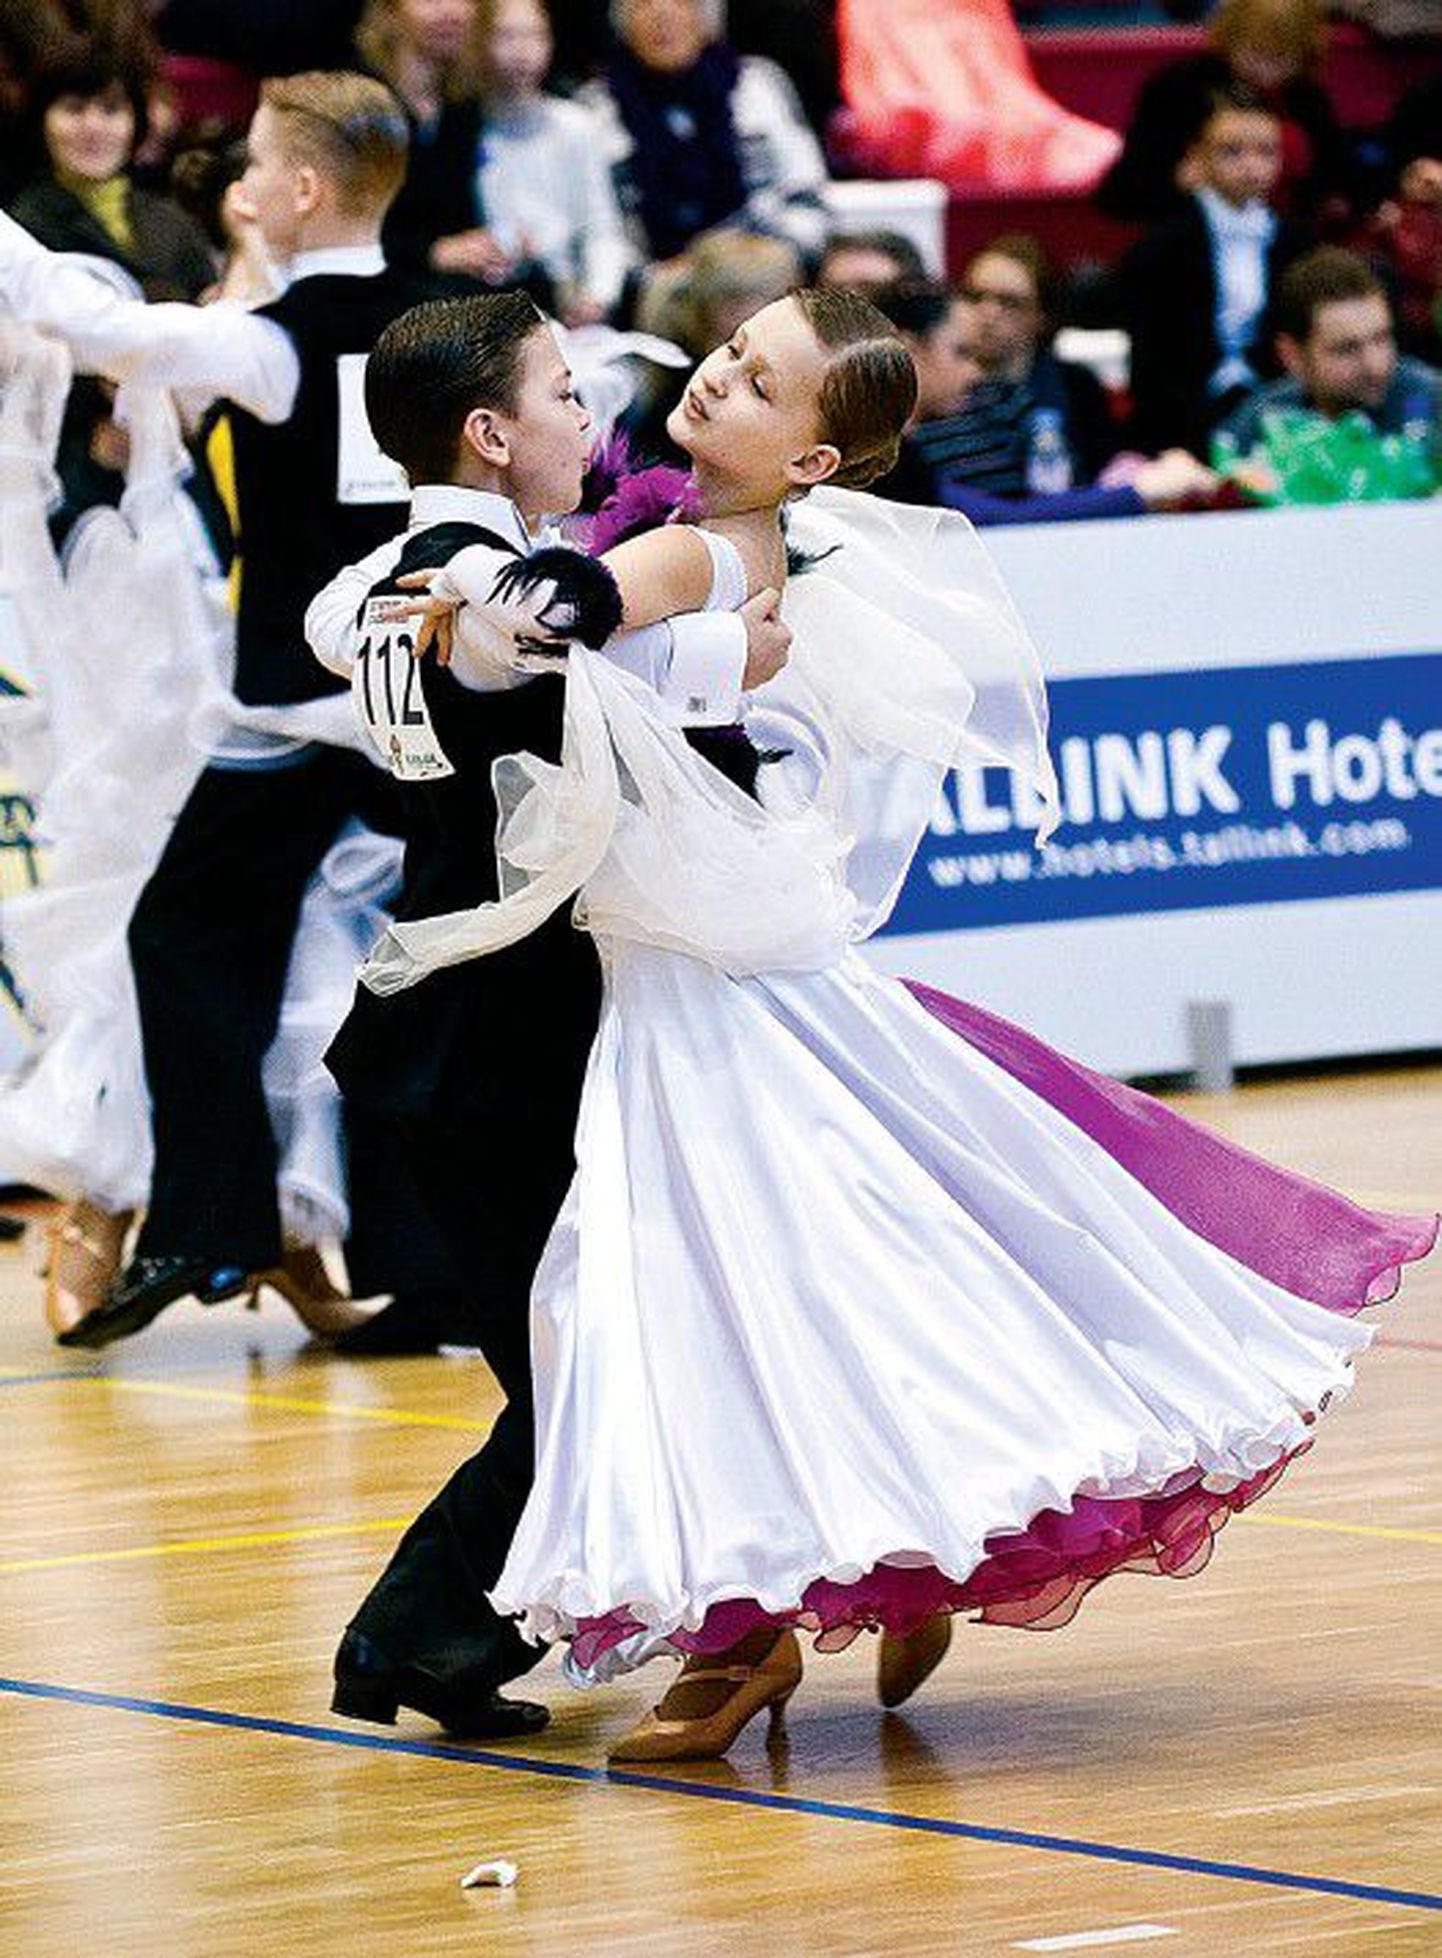 Сандер Кюннапуу начал заниматься танцами по приглашению своей нынешней партнерши Хермине Айнтс еще до того, как пошел в школу. Теперь танцы для них обоих — очень серьезное увлечение. На прошлых выходных эта юная пара впервые выступила на чемпионате Эстонии в новой I юниорской возрастной категории.